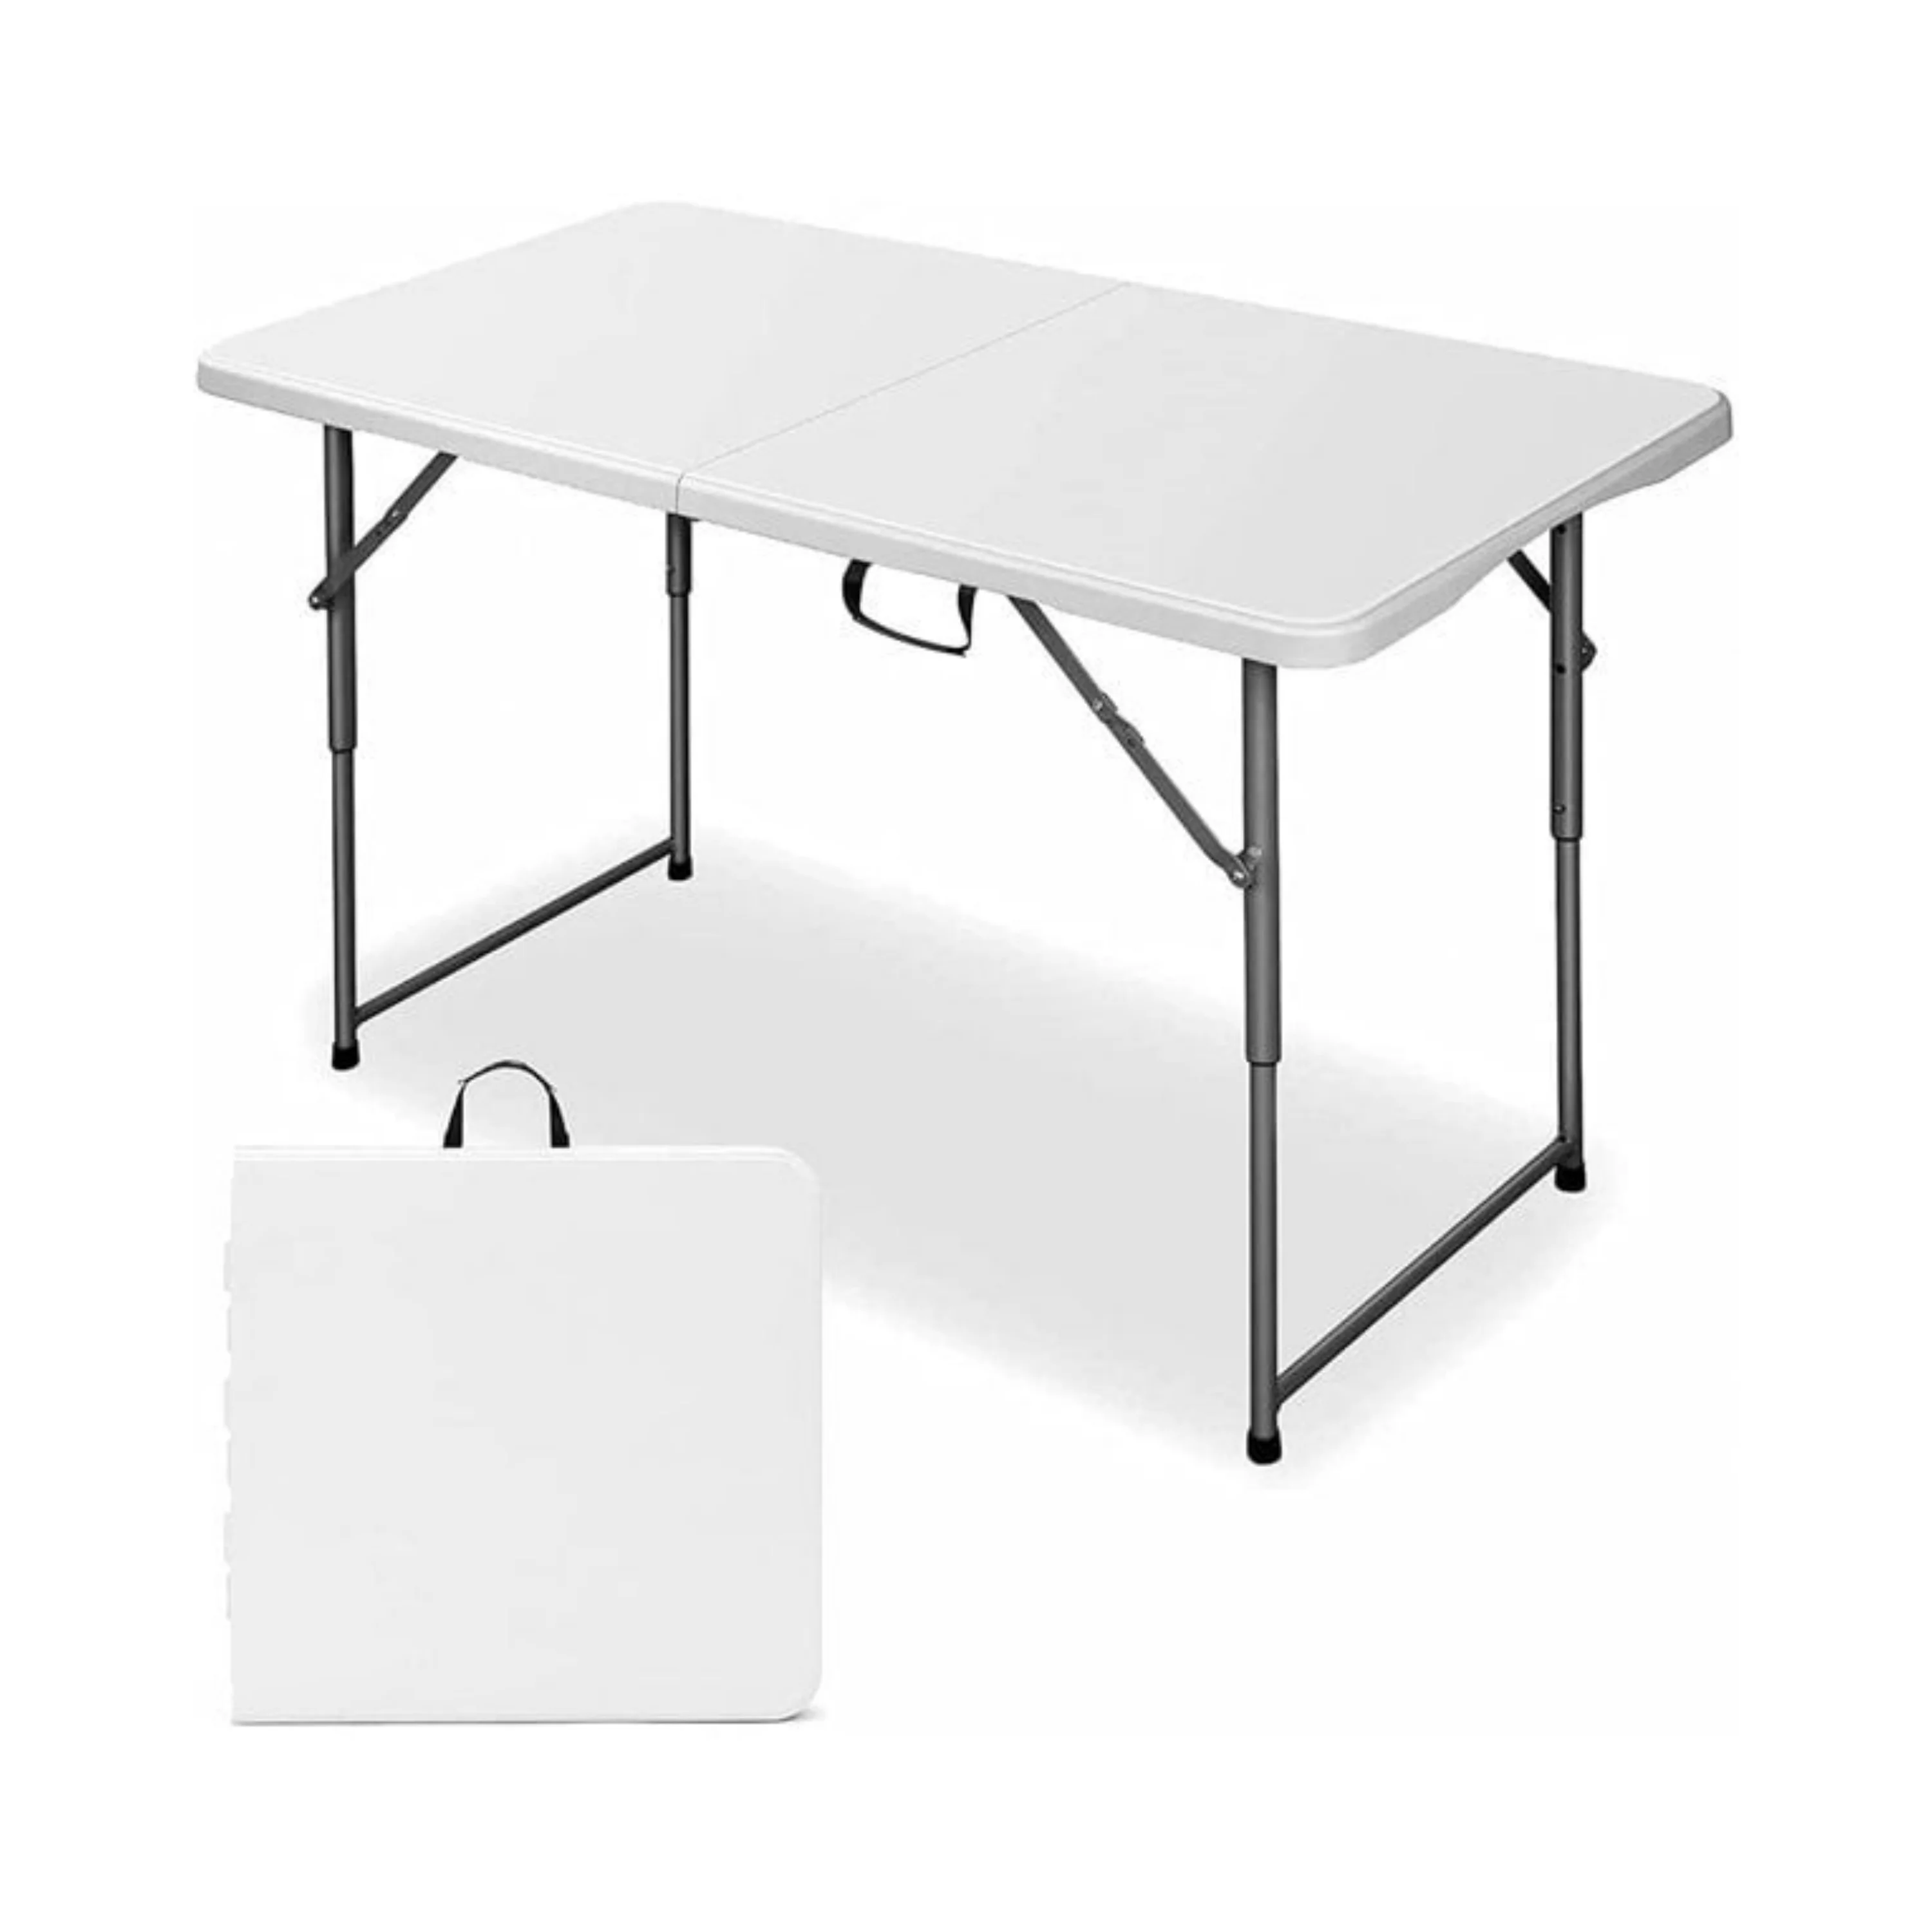 

Складной стол для кемпинга, 4 фута, регулируемый по высоте, белый, для кемпинга, портативный стол, компьютерный стол